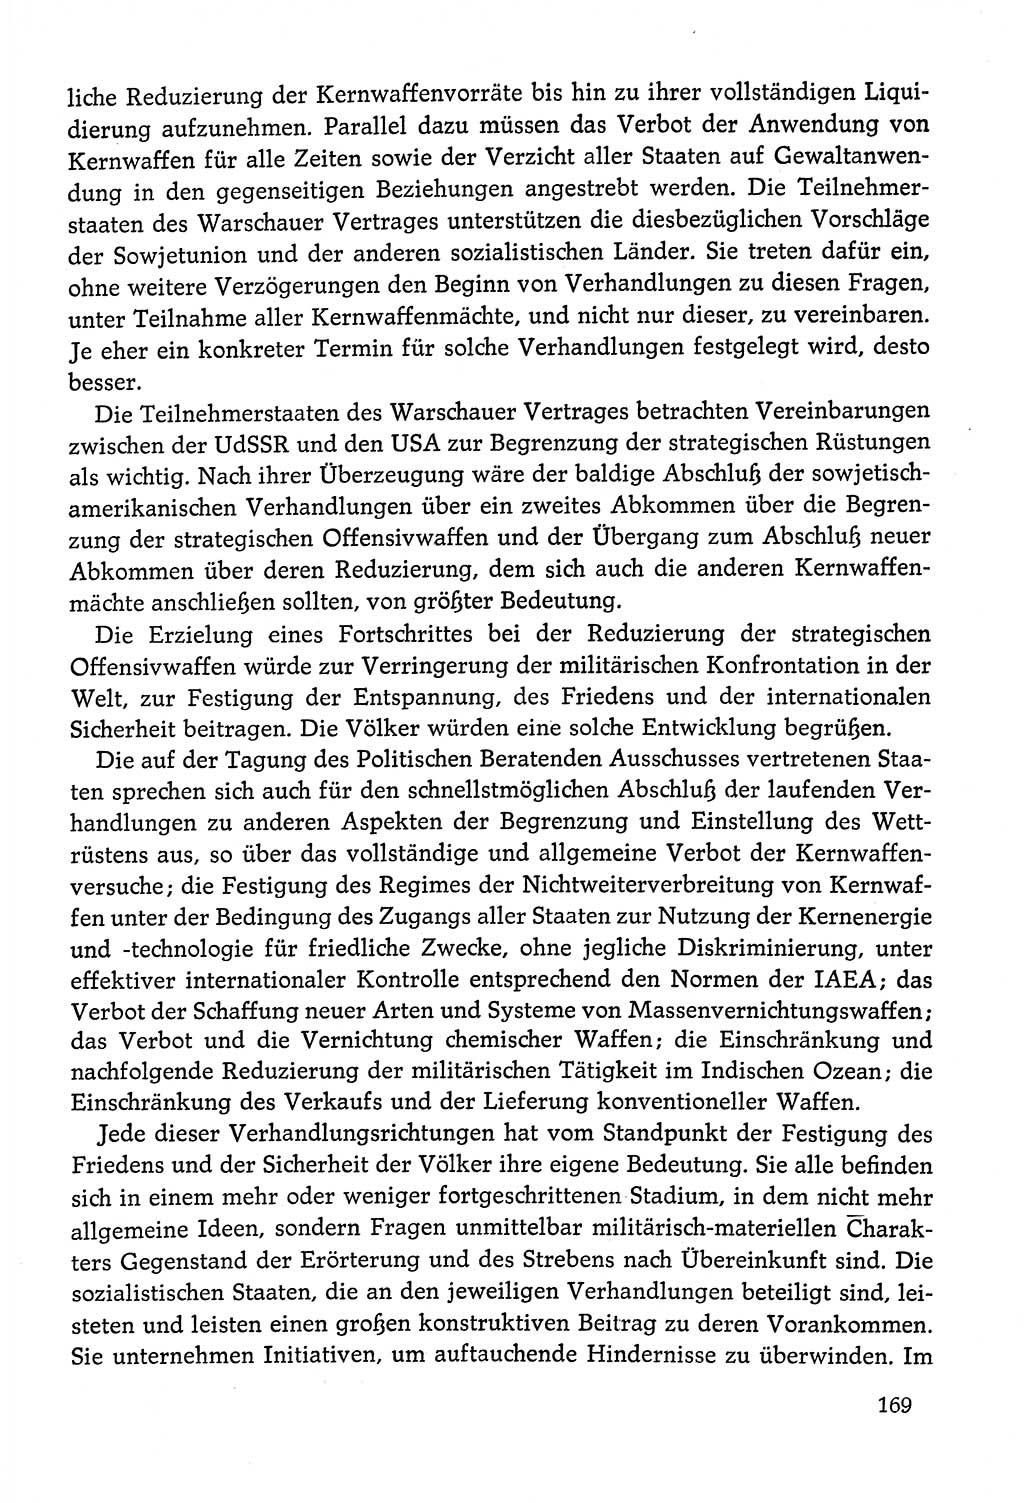 Dokumente der Sozialistischen Einheitspartei Deutschlands (SED) [Deutsche Demokratische Republik (DDR)] 1978-1979, Seite 169 (Dok. SED DDR 1978-1979, S. 169)